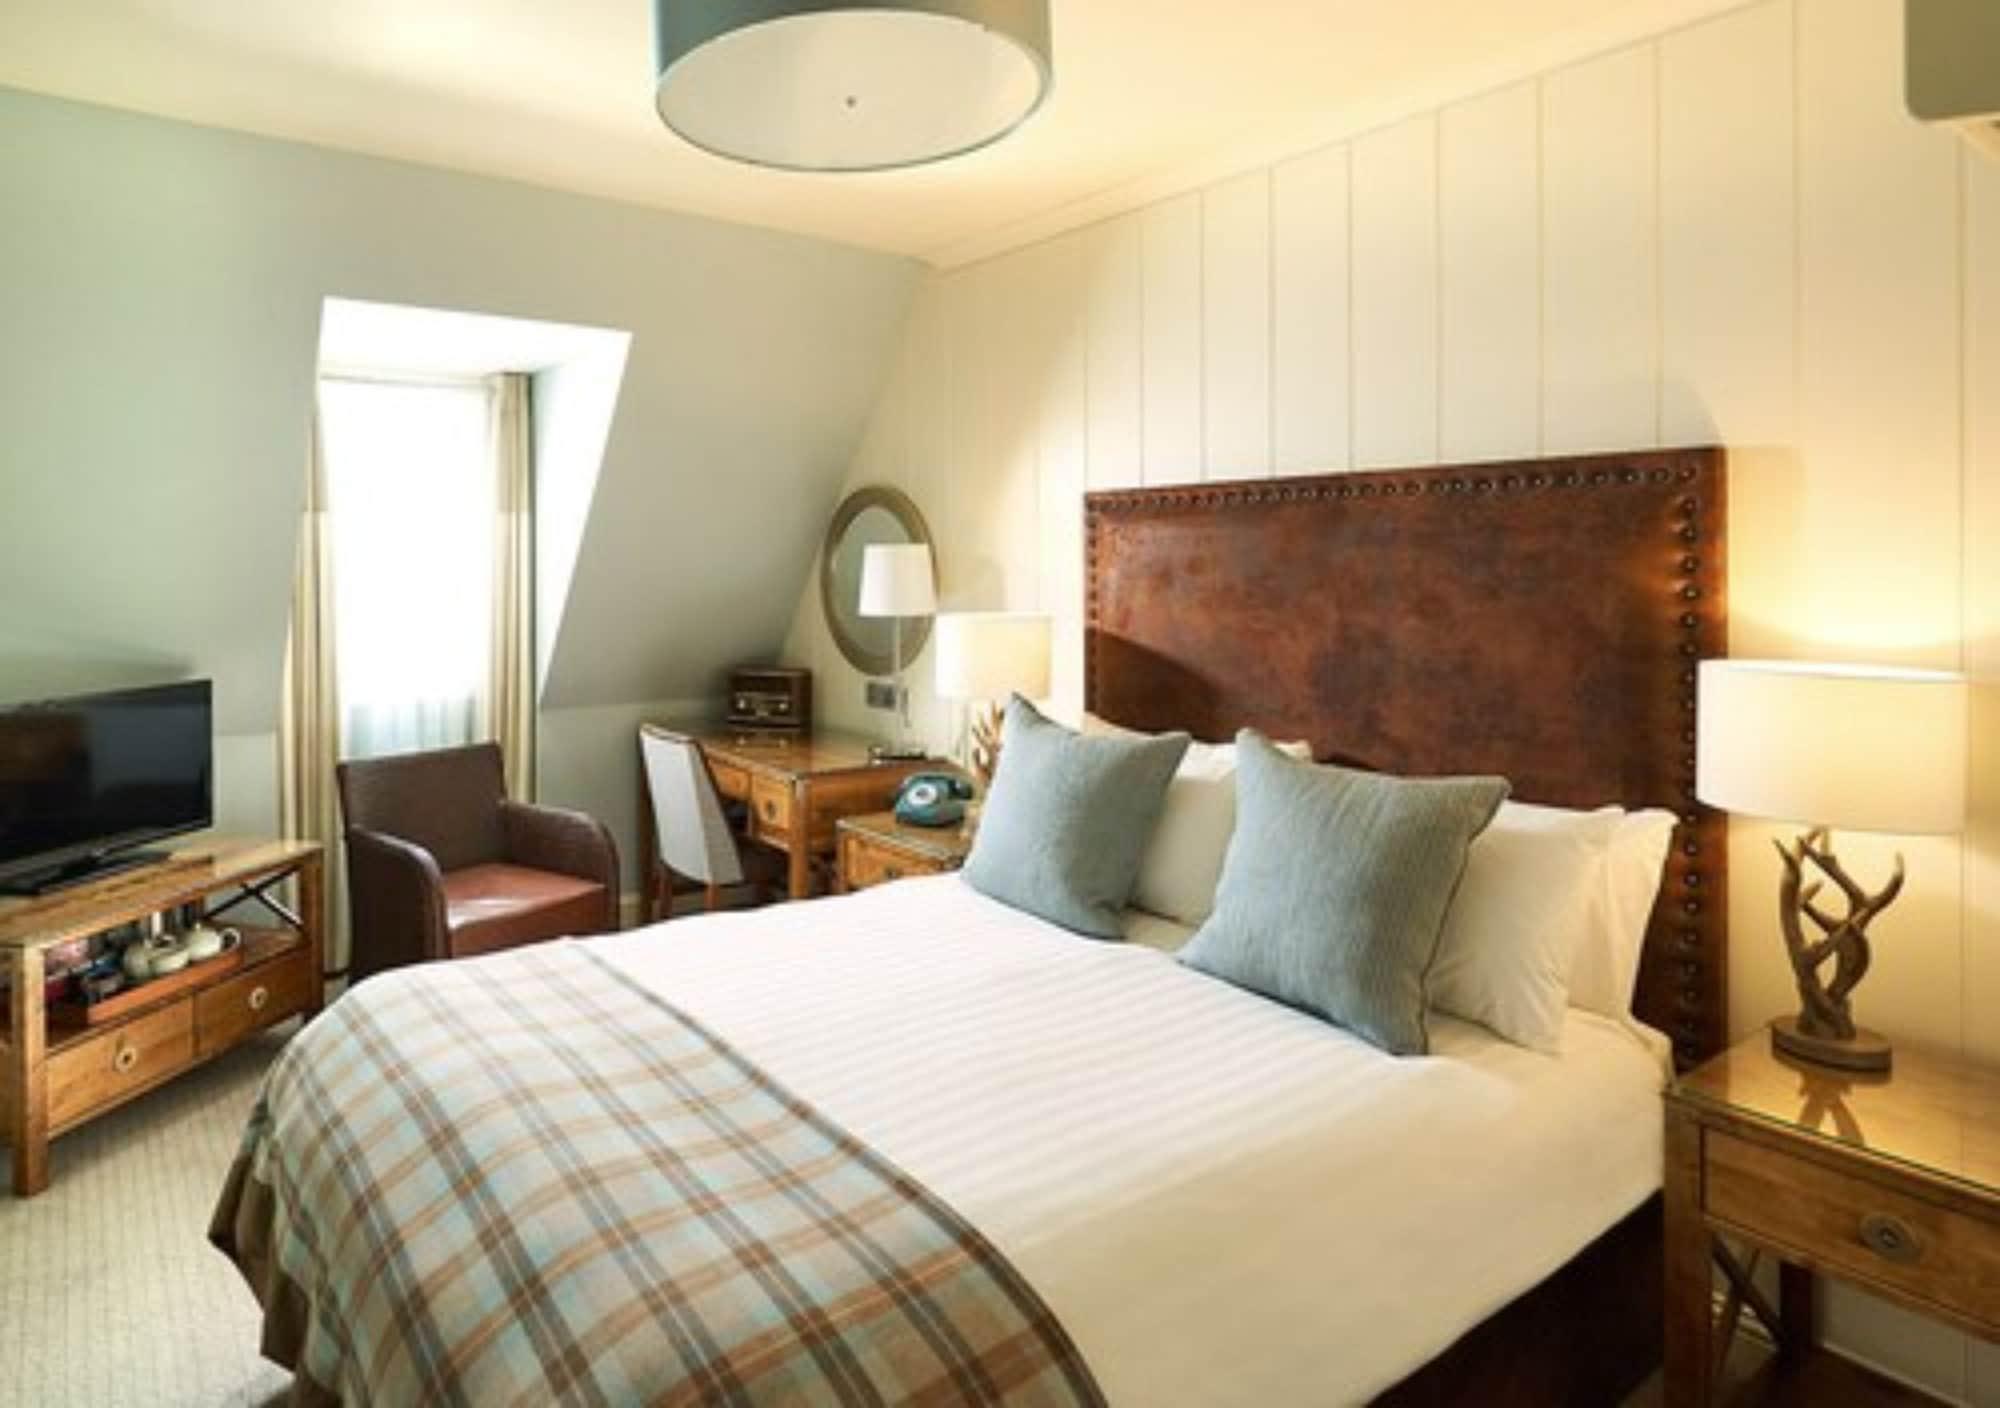 Loch Fyne Hotel & Spa Inveraray Esterno foto